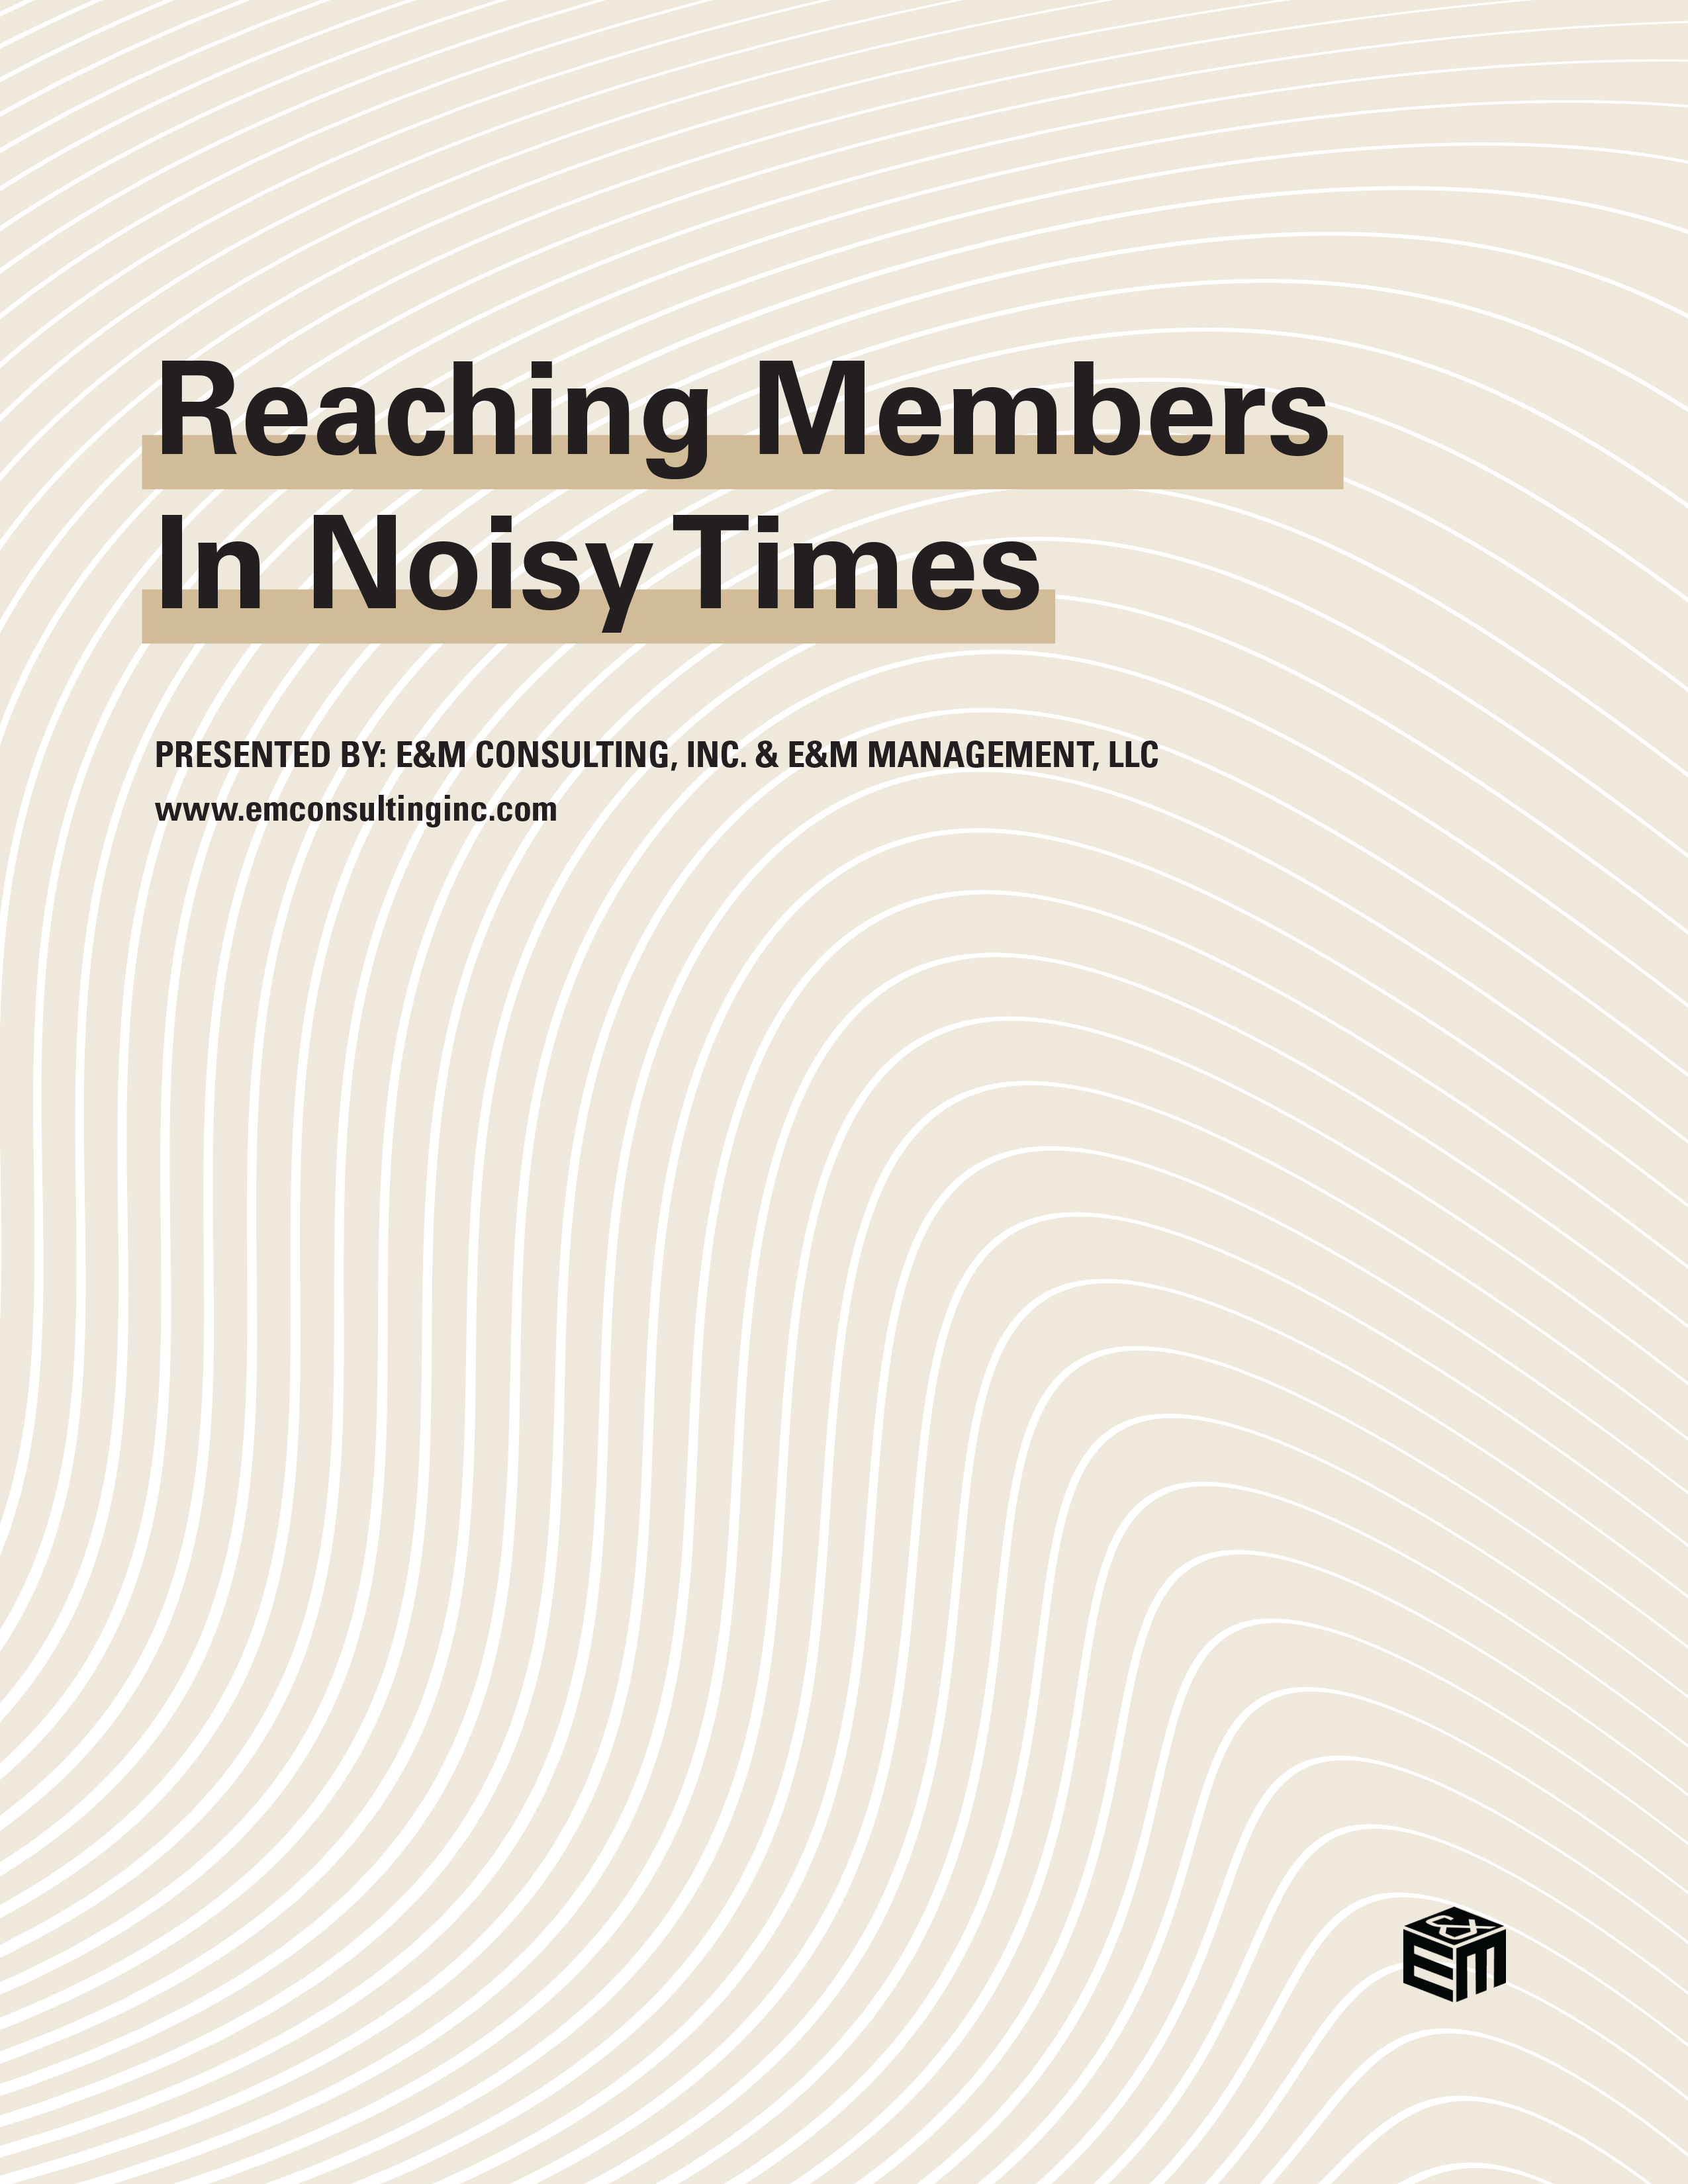 Tan fingerprint pattern for Reaching Members in Noisy Times